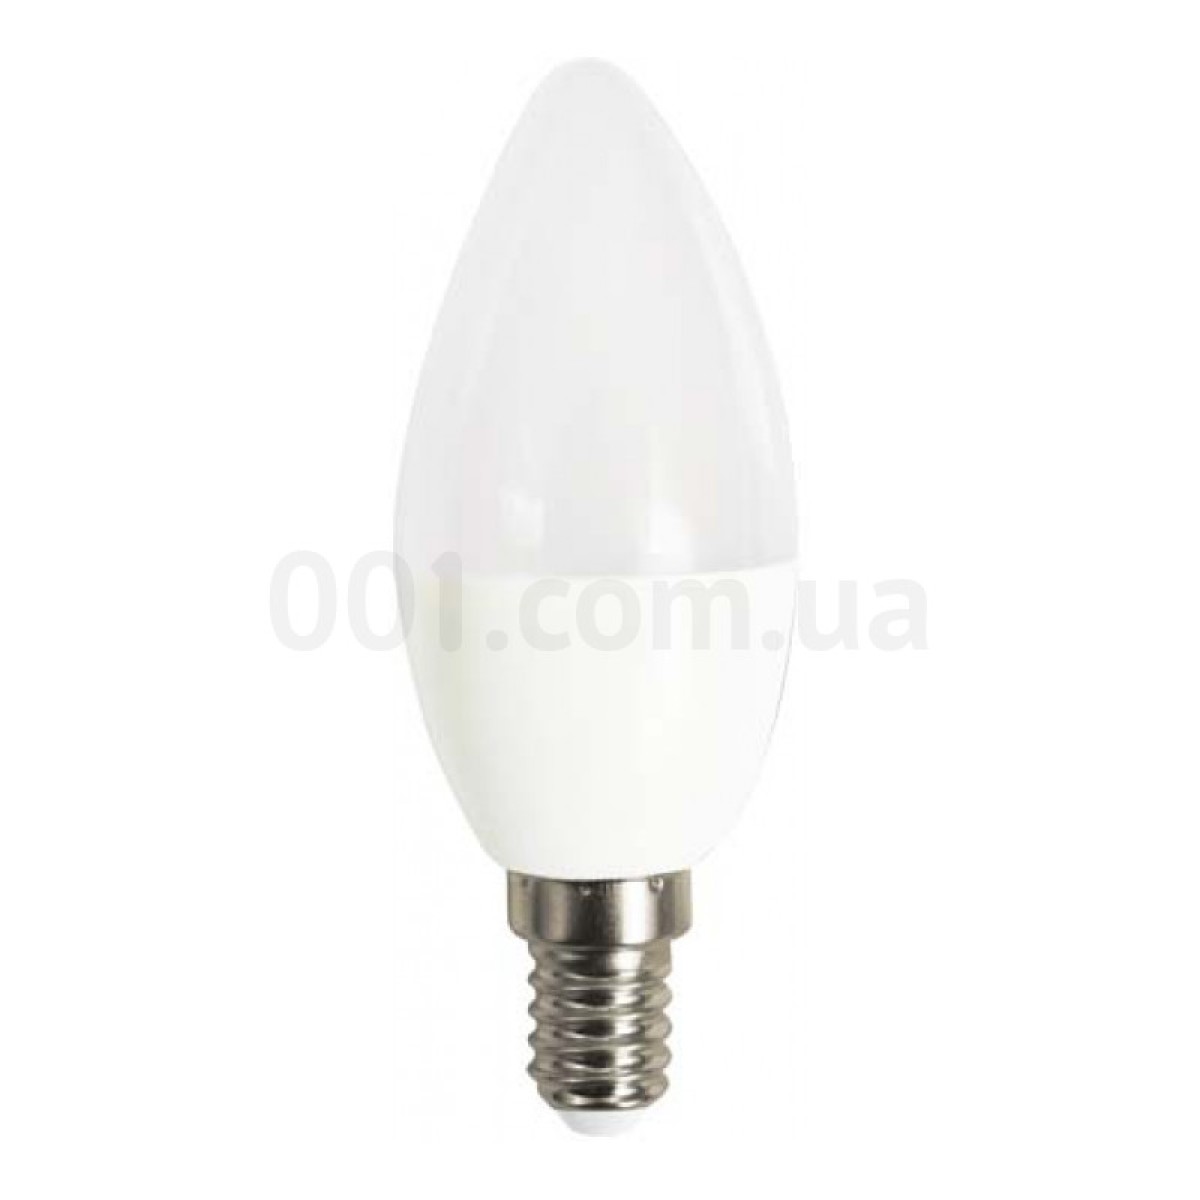 Светодиодная лампа LB-720 C37 (свеча) 4Вт 2700K E14, Feron 256_256.jpg